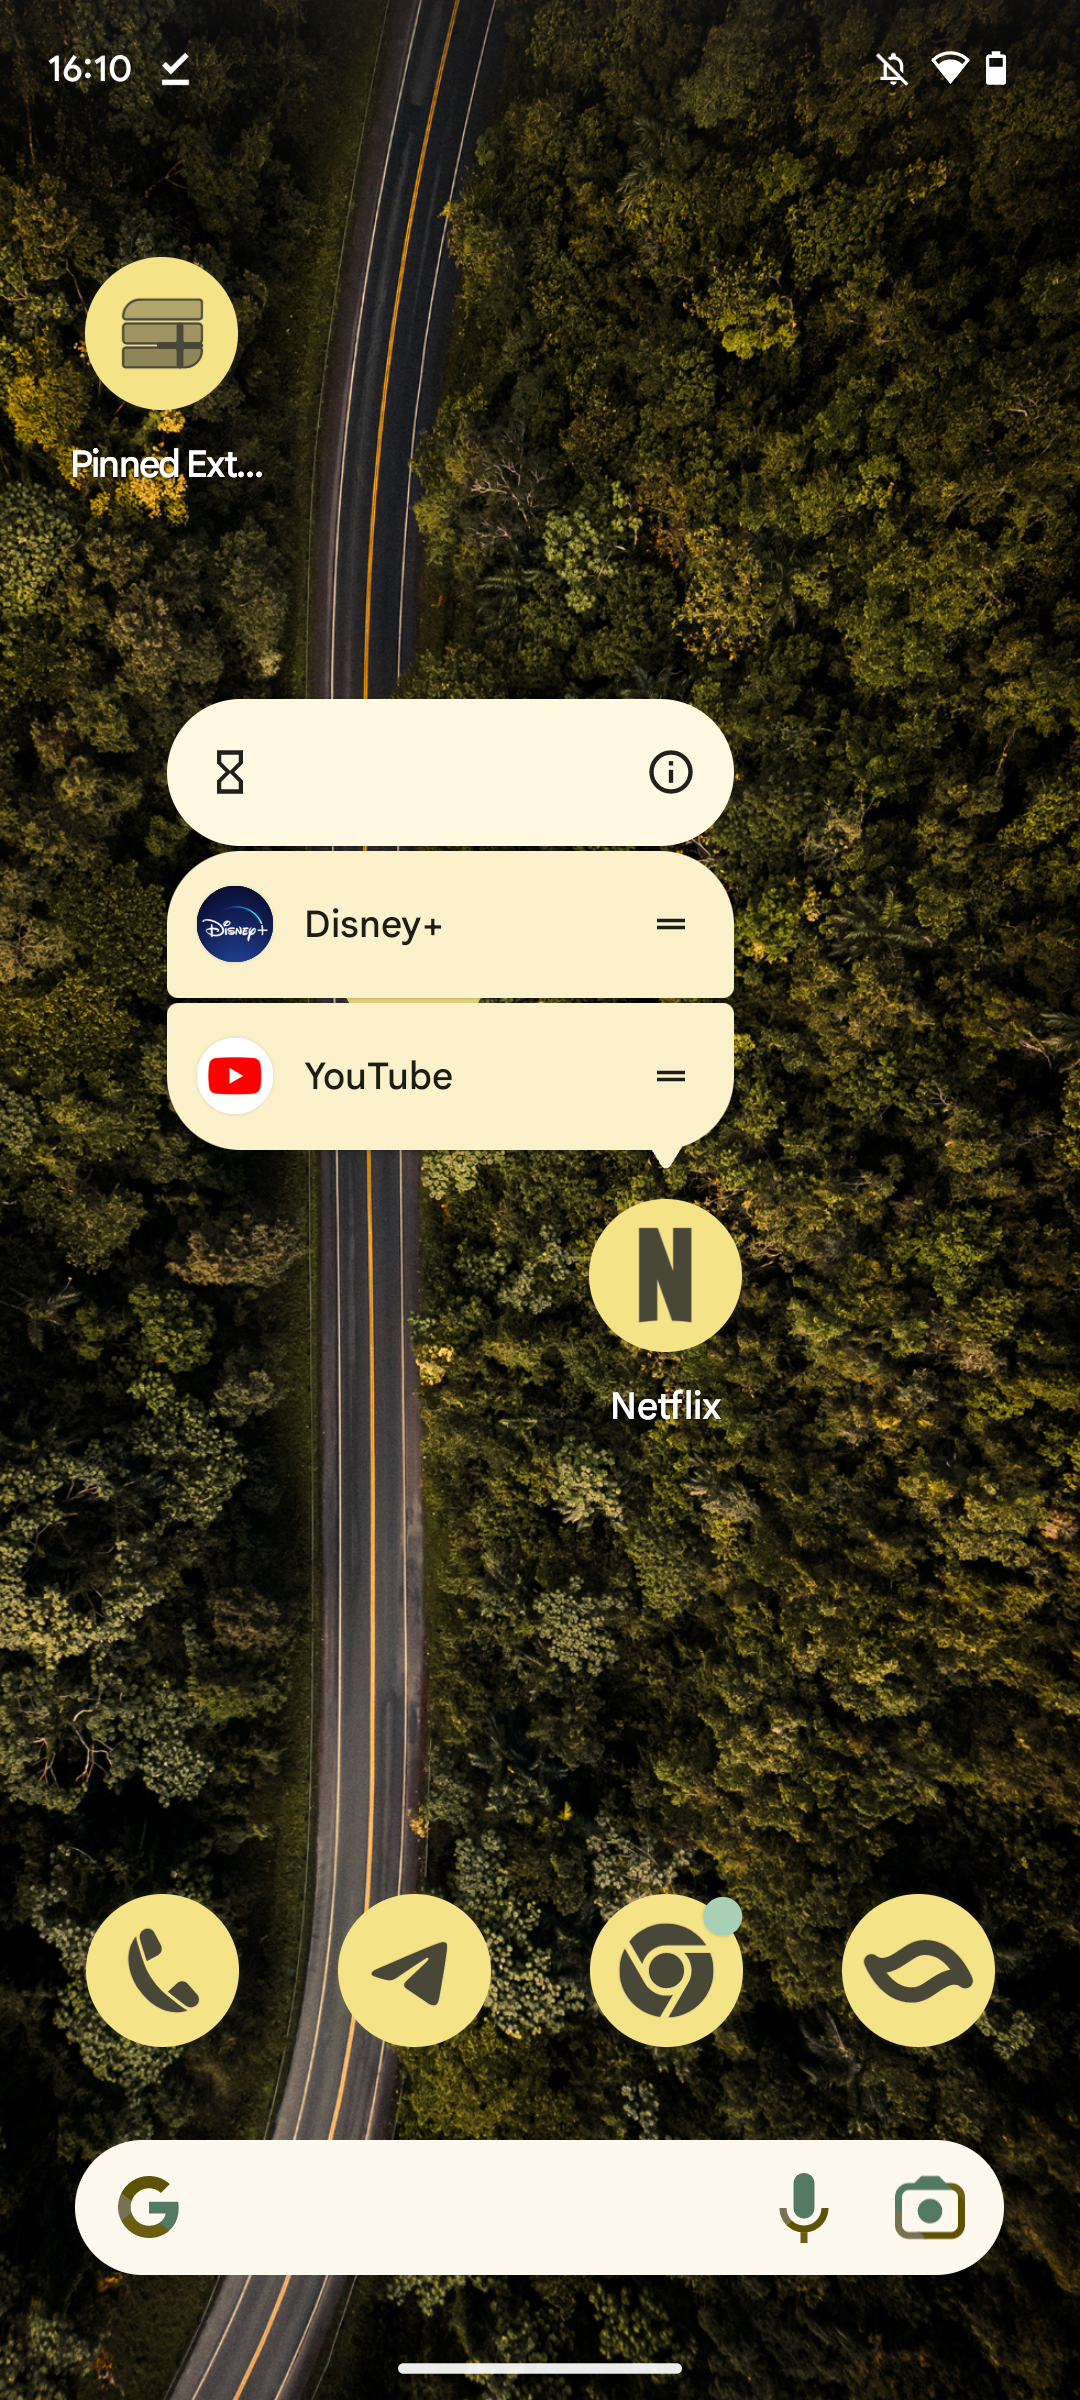 Captura de tela da tela inicial do Pixel Launcher, com o novo ícone temático do Netflix e seus atalhos